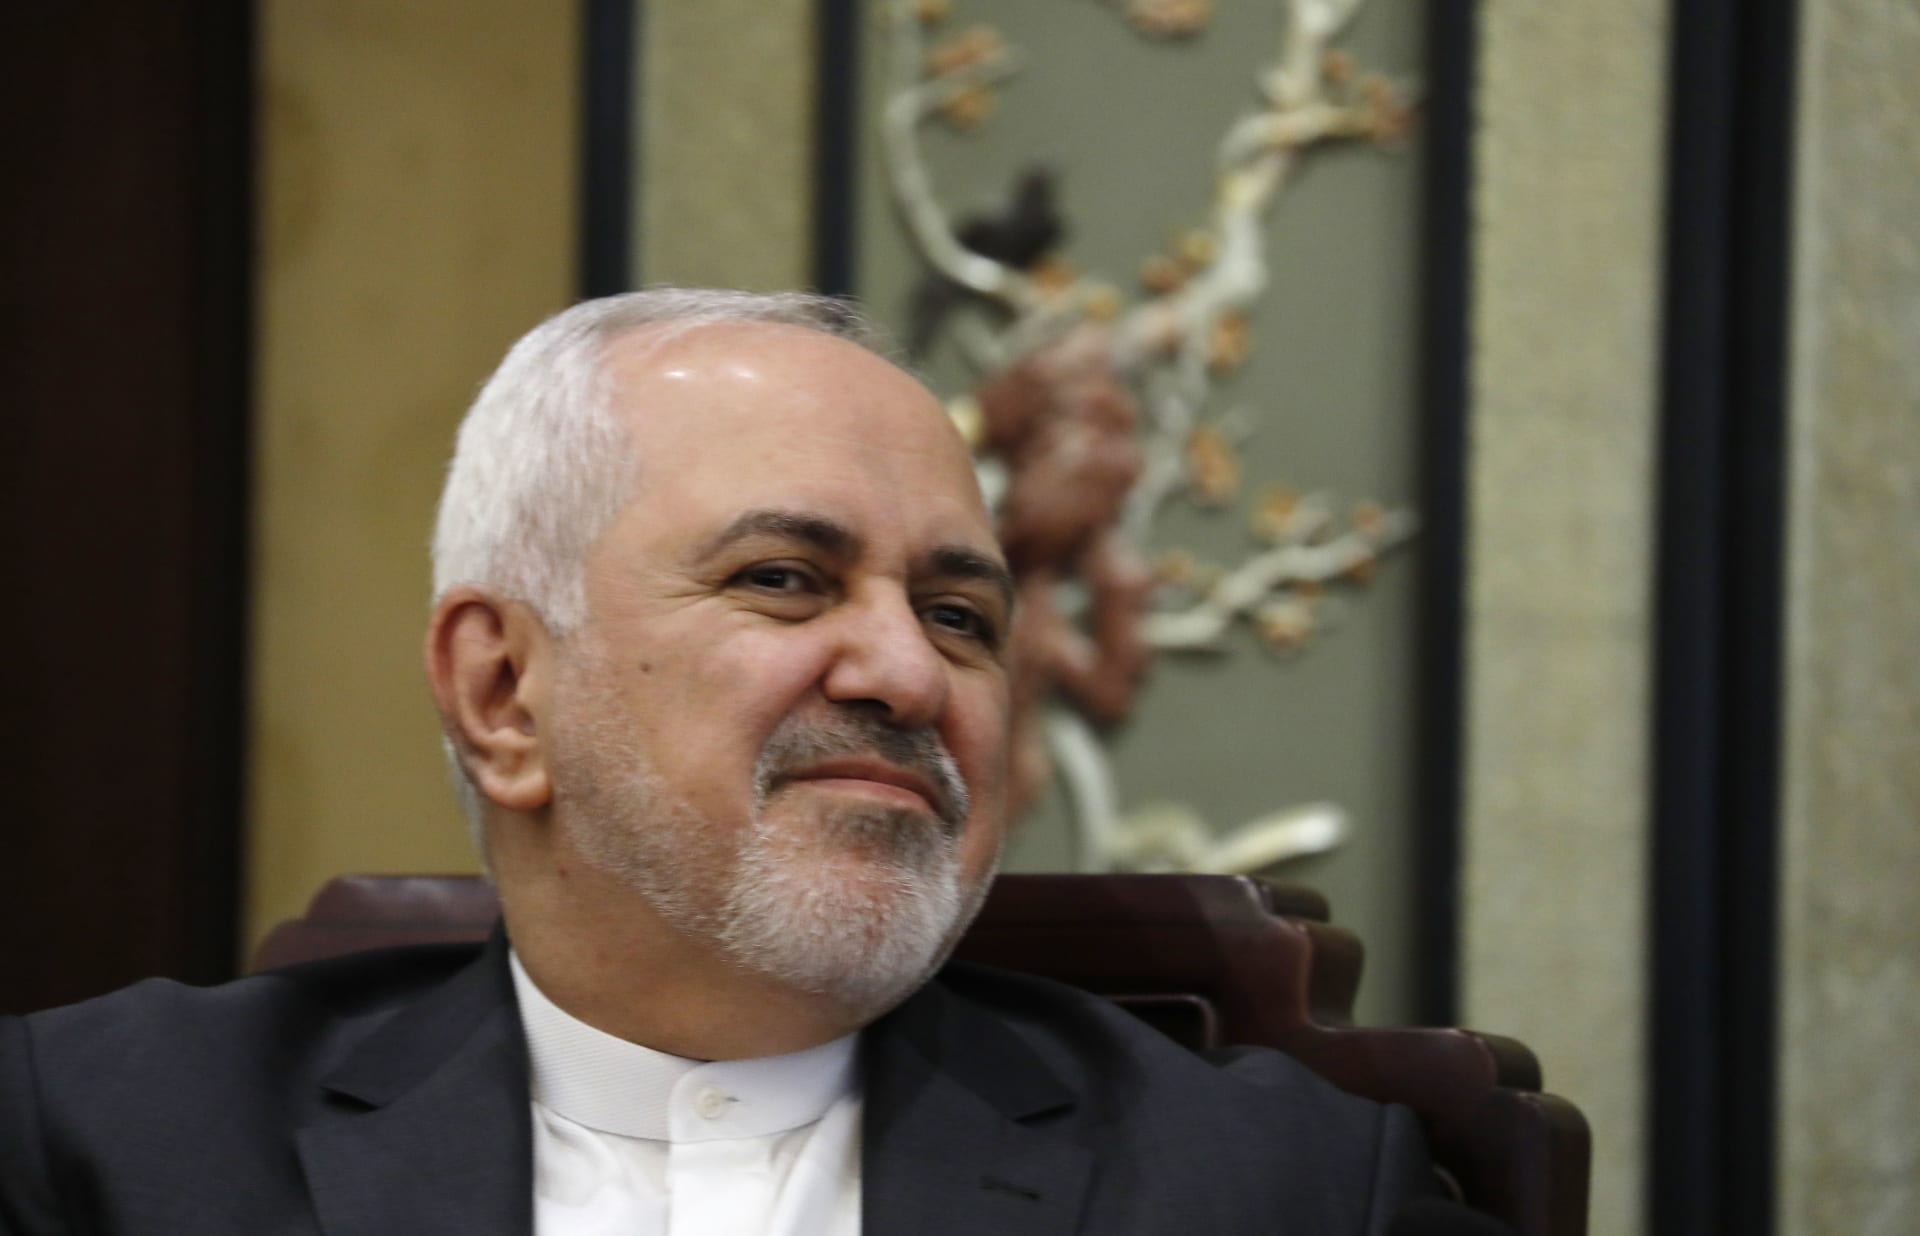 إيران ردا على "تناقض" تصريحات ترامب: ما يهمنا هو تغيير السلوك